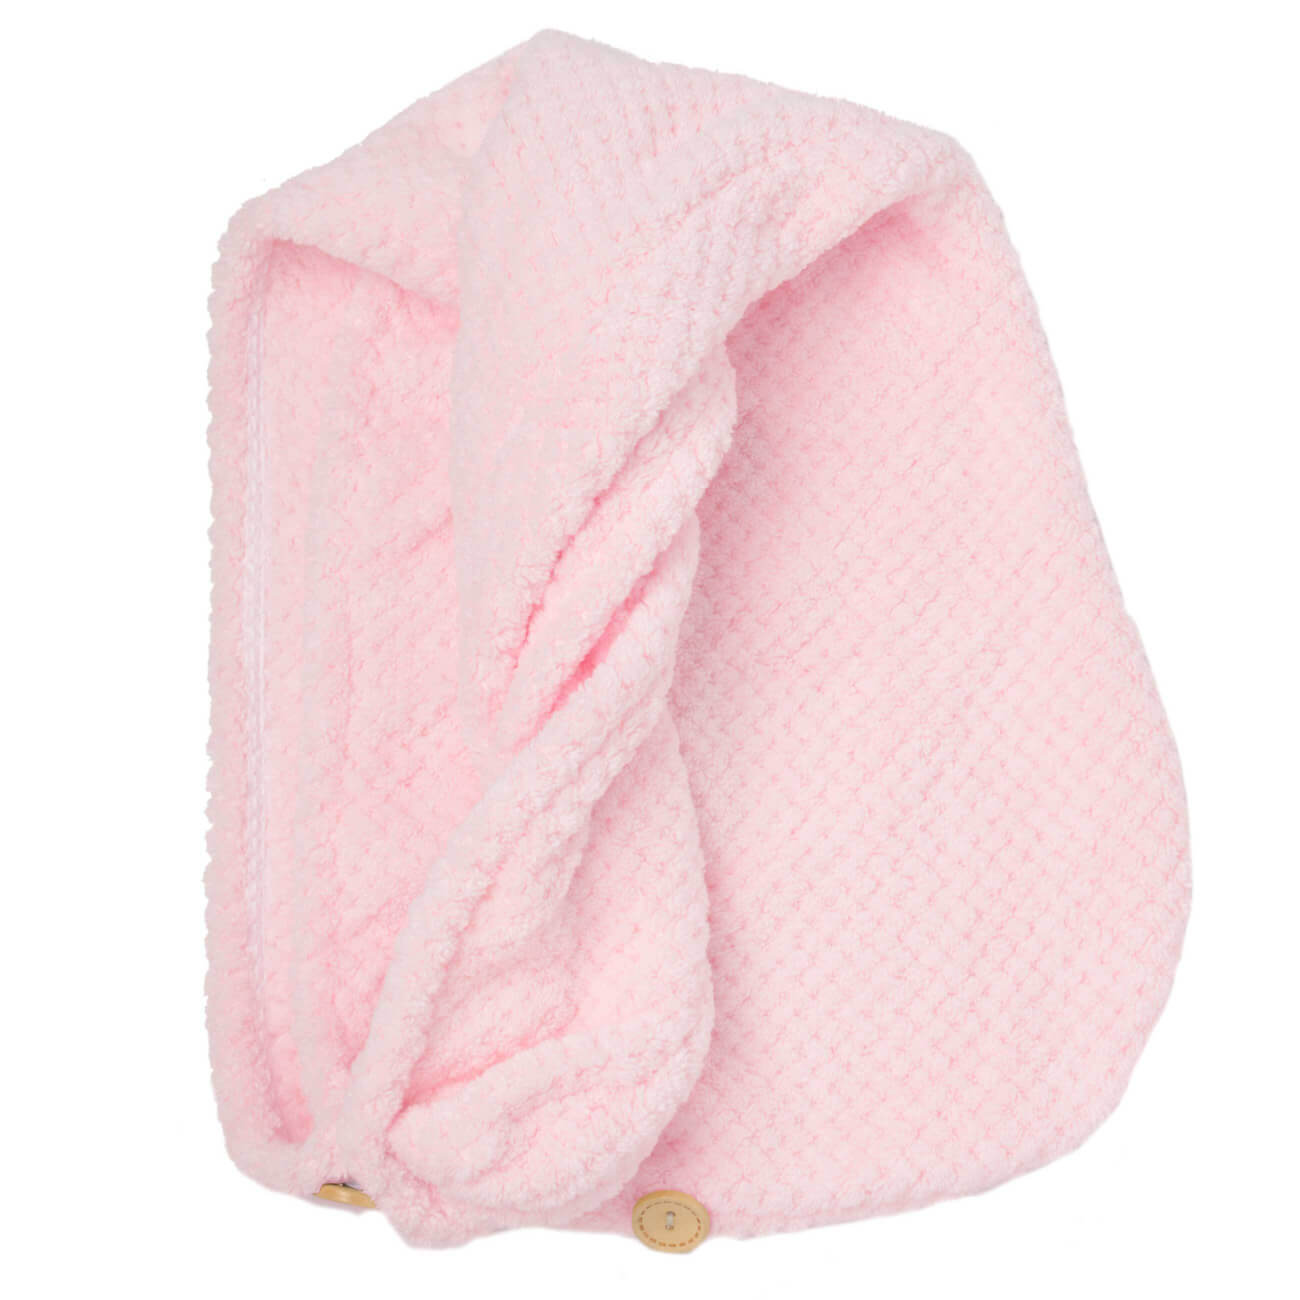 Полотенце-тюрбан для волос, 62х24 см, микроволокно, розовое, Fiber spa изображение № 1